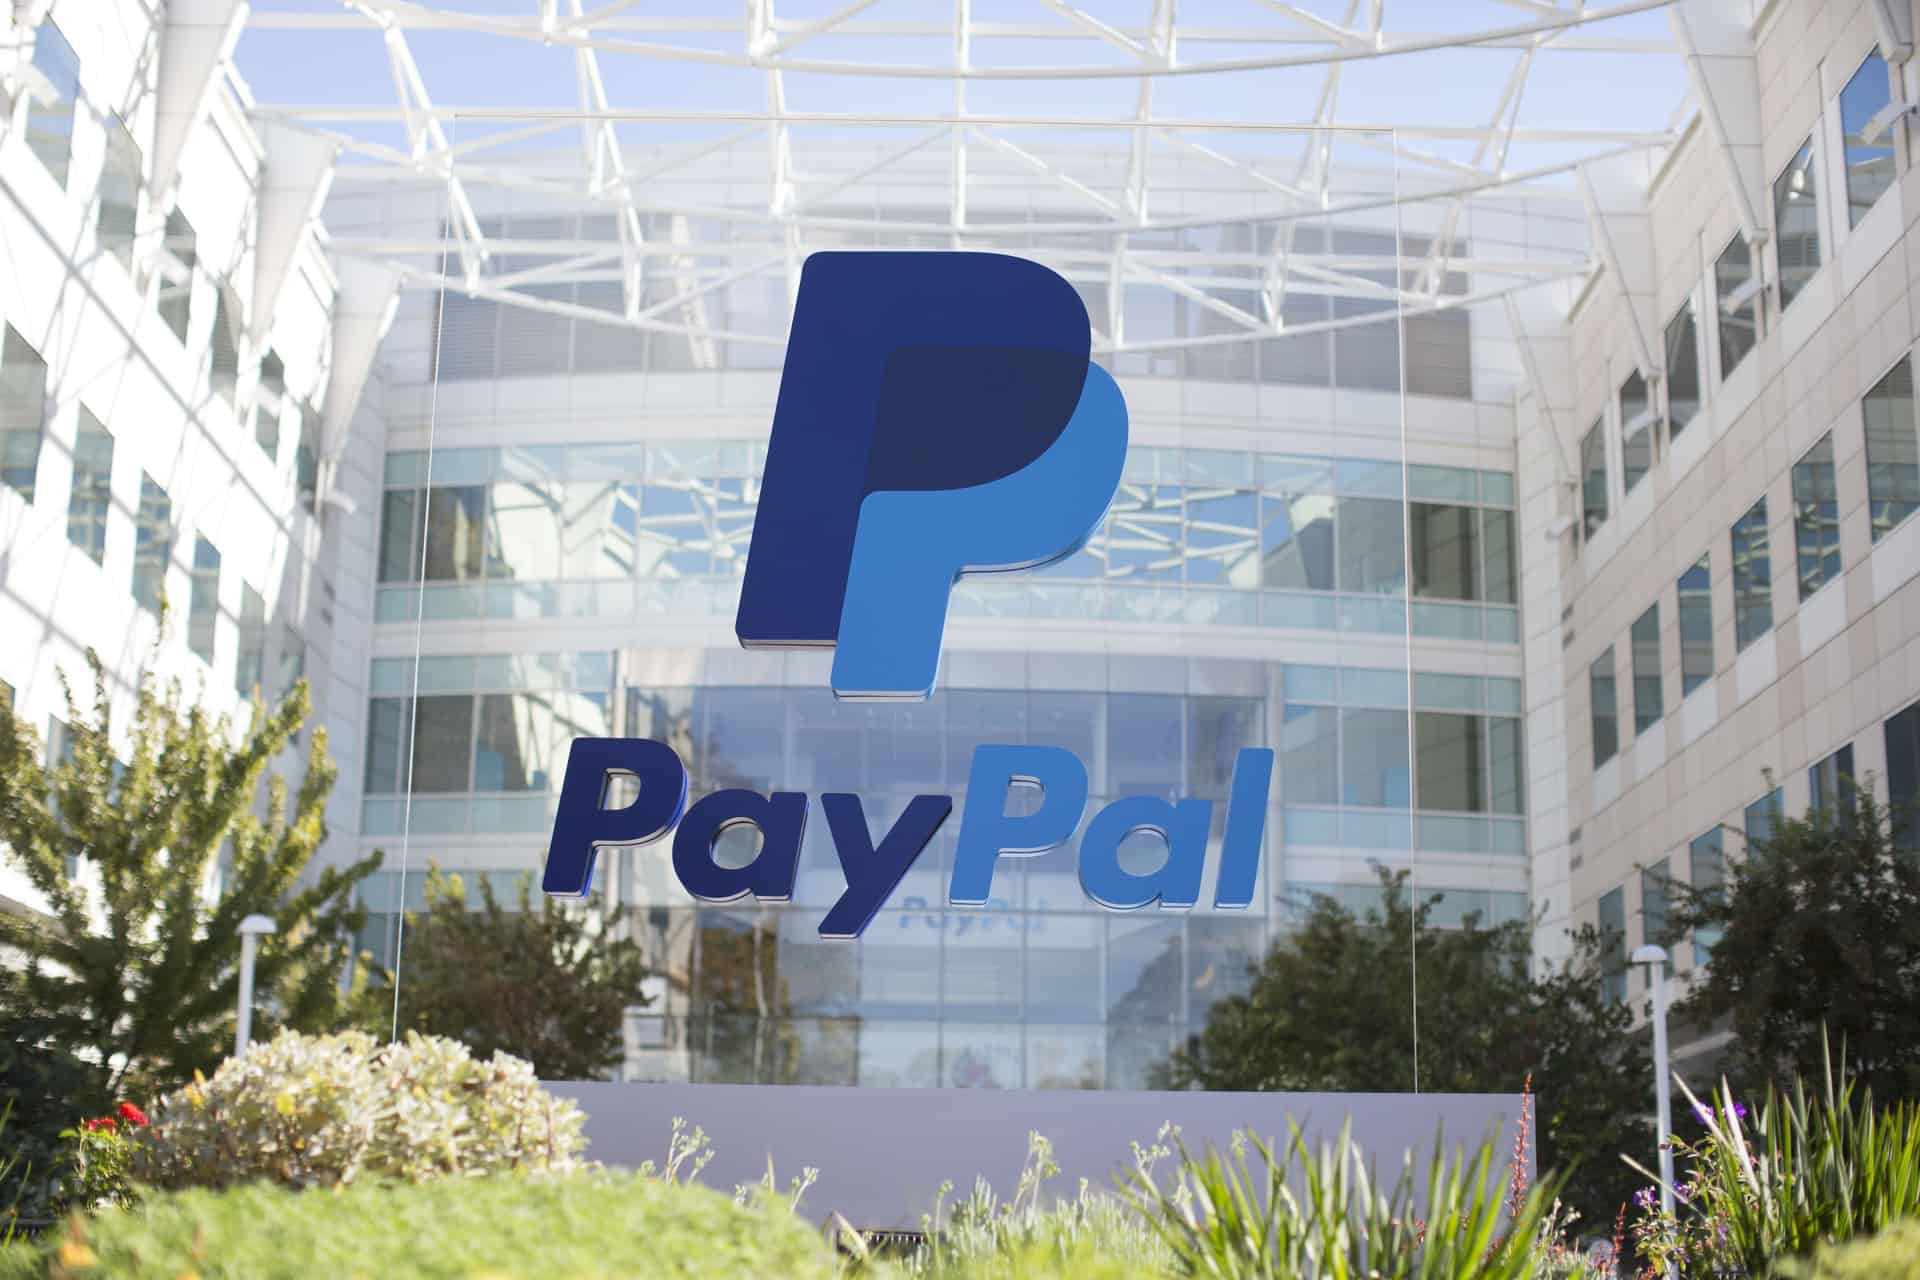 Photographie des bureaux de PayPal sur lesquels apparait le logo de l'entreprise.